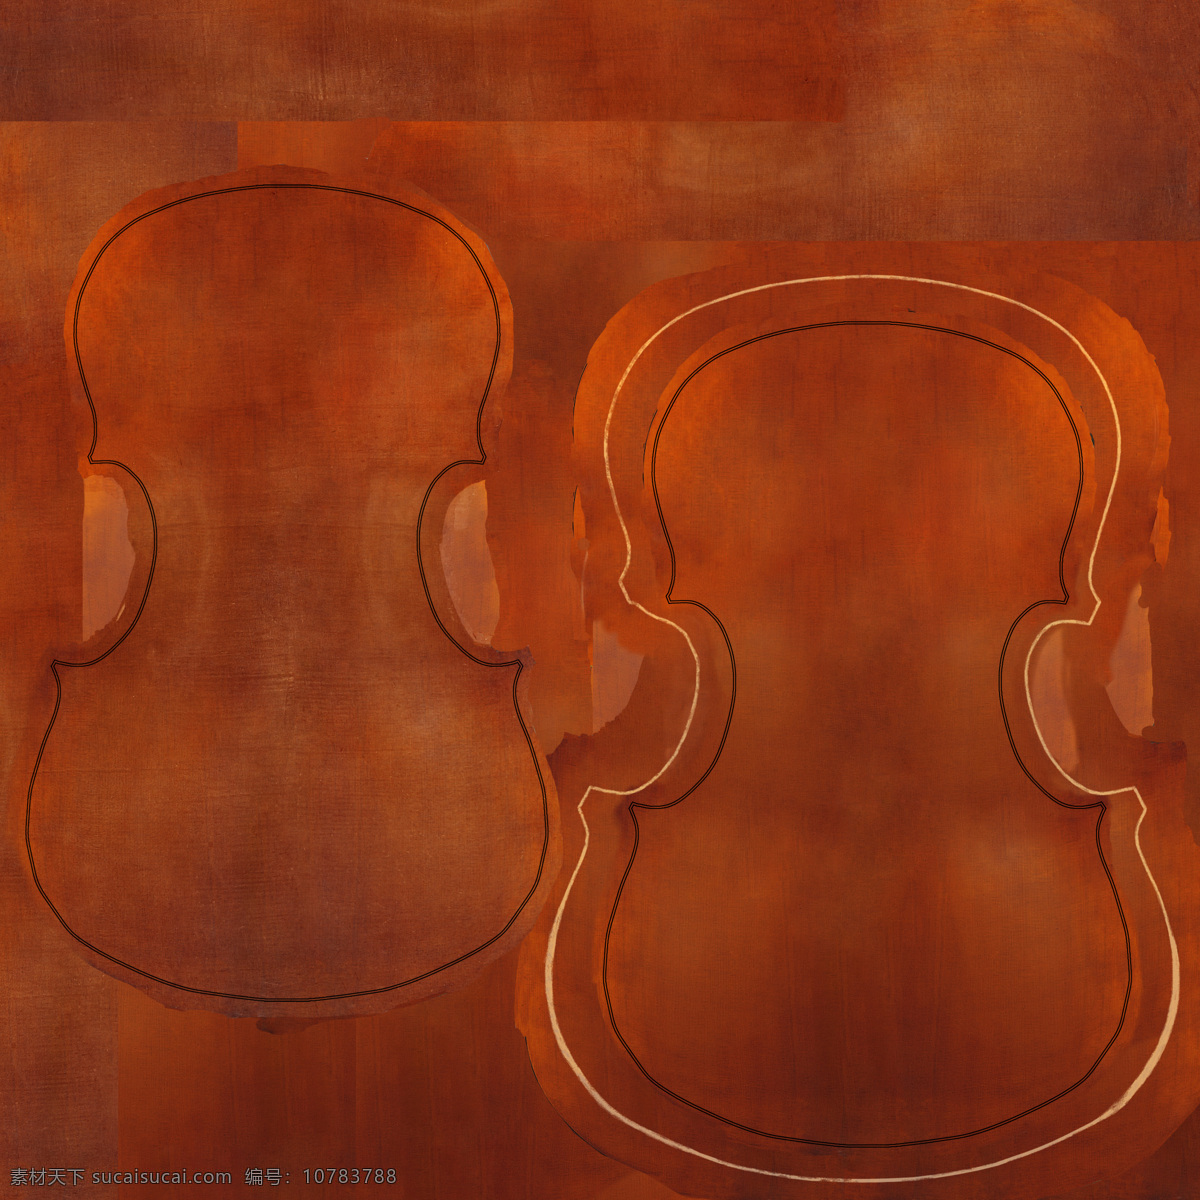 带贴图 cello 大提琴 文化用品 乐器模型 3d模型素材 电器模型